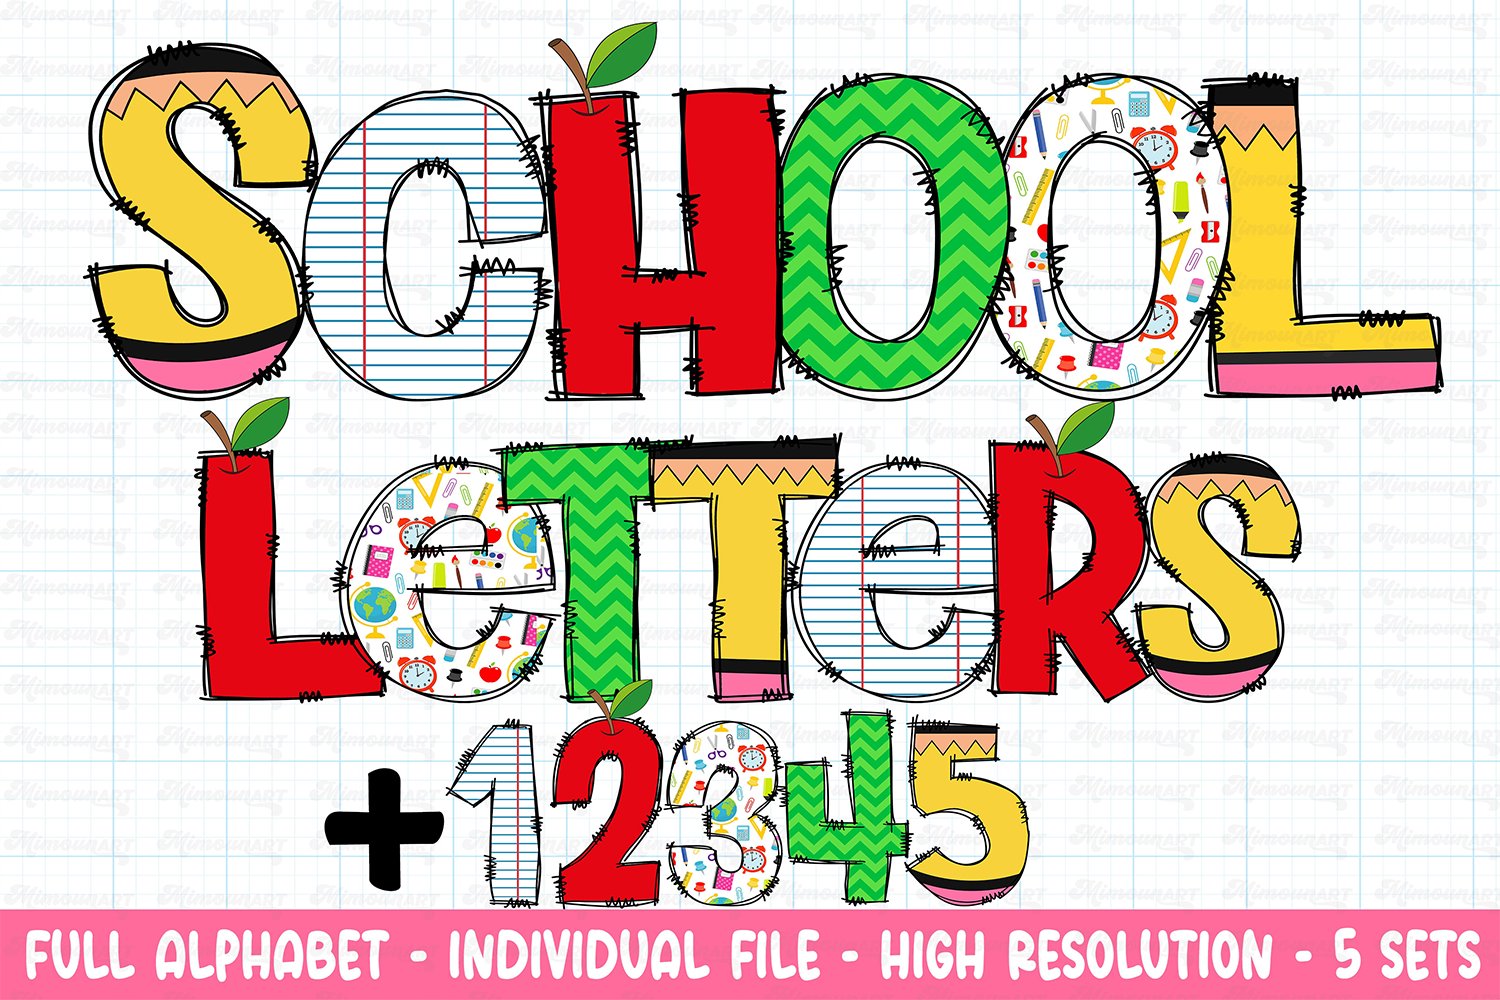 Teacher Doodle letters Bundle cover image.